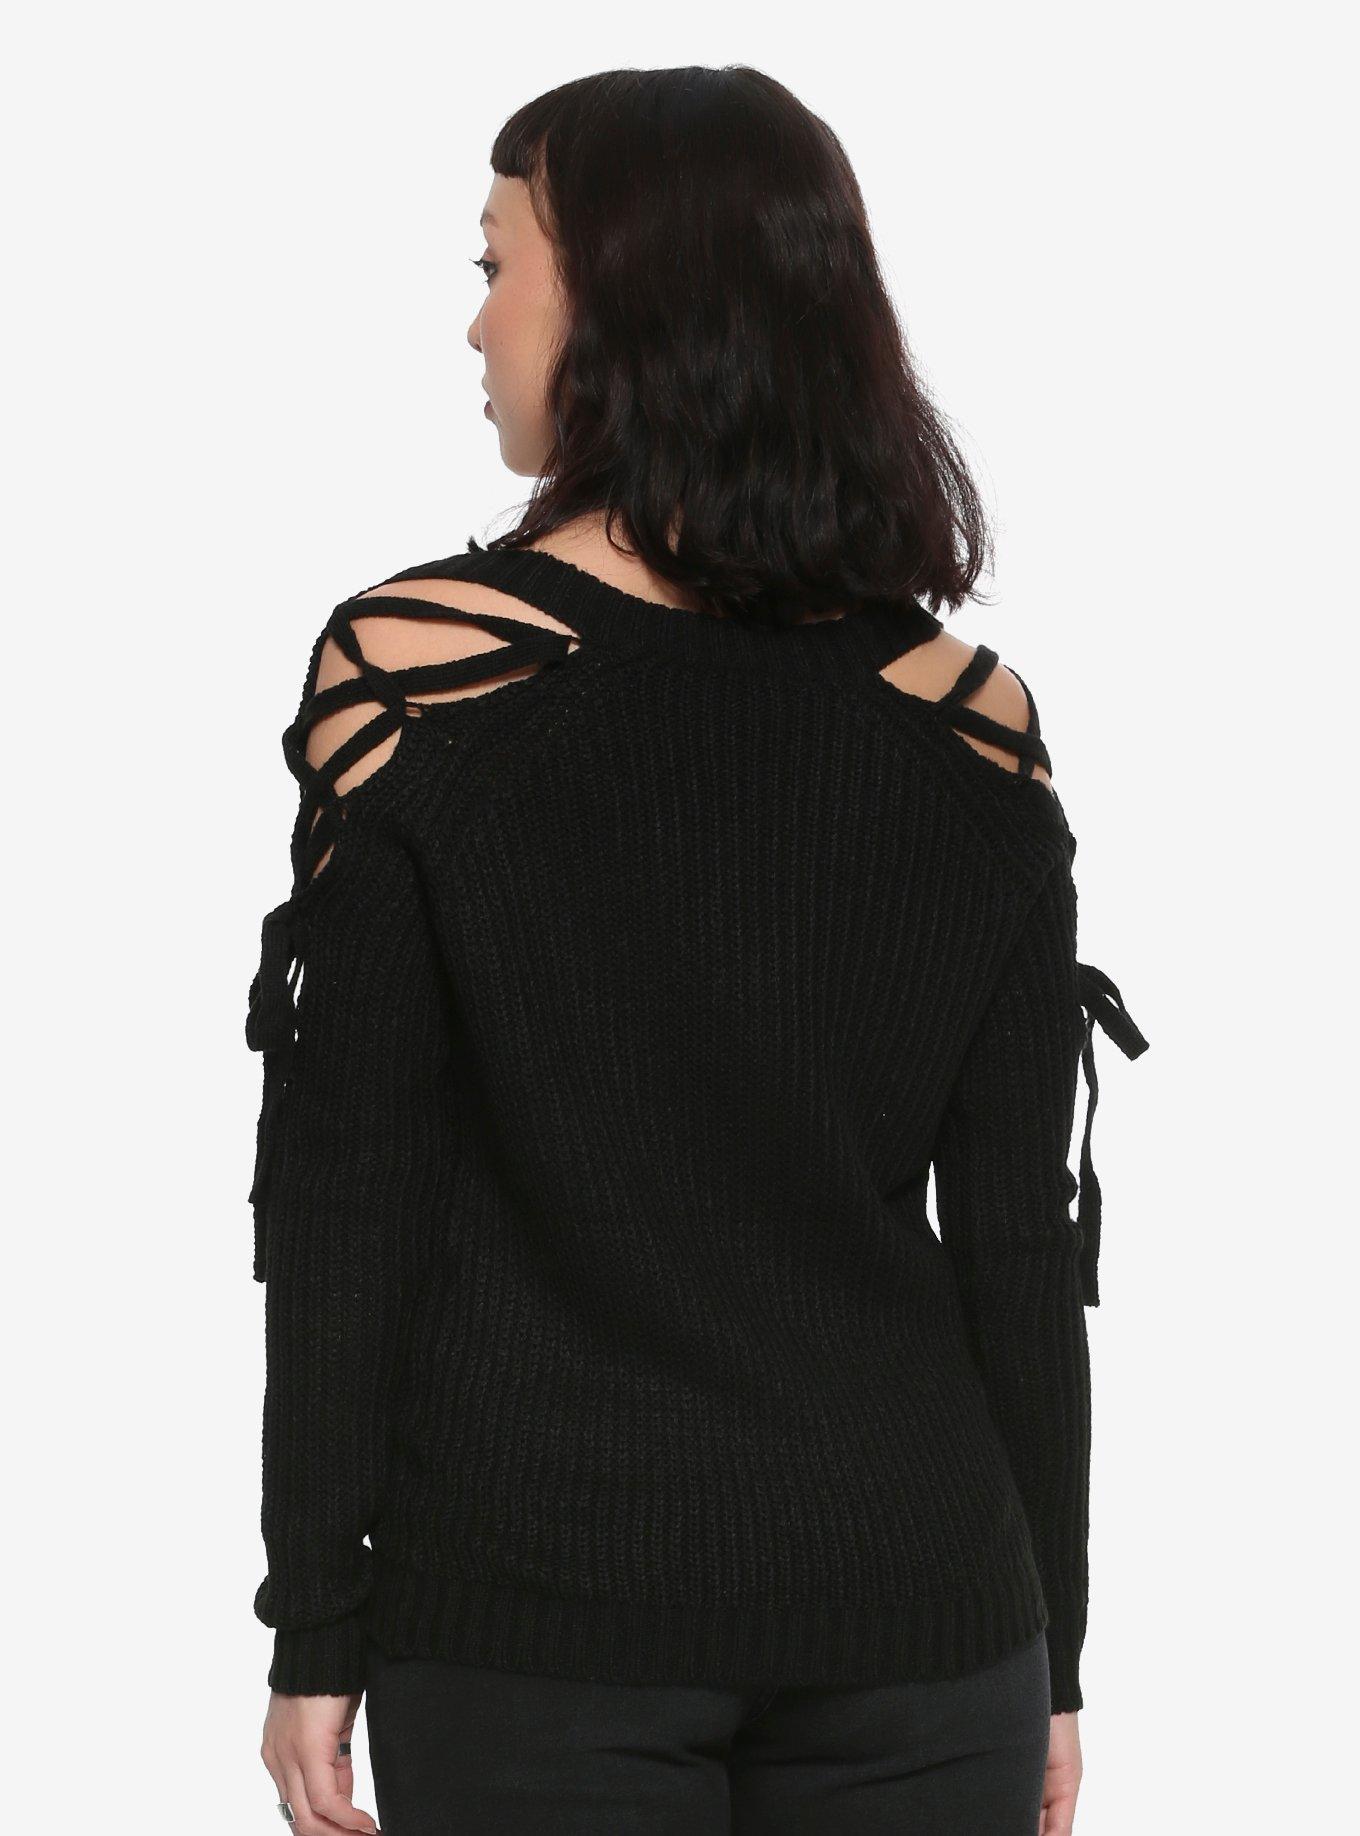 Black Lace-Up Girls Cold Shoulder Sweater, , alternate